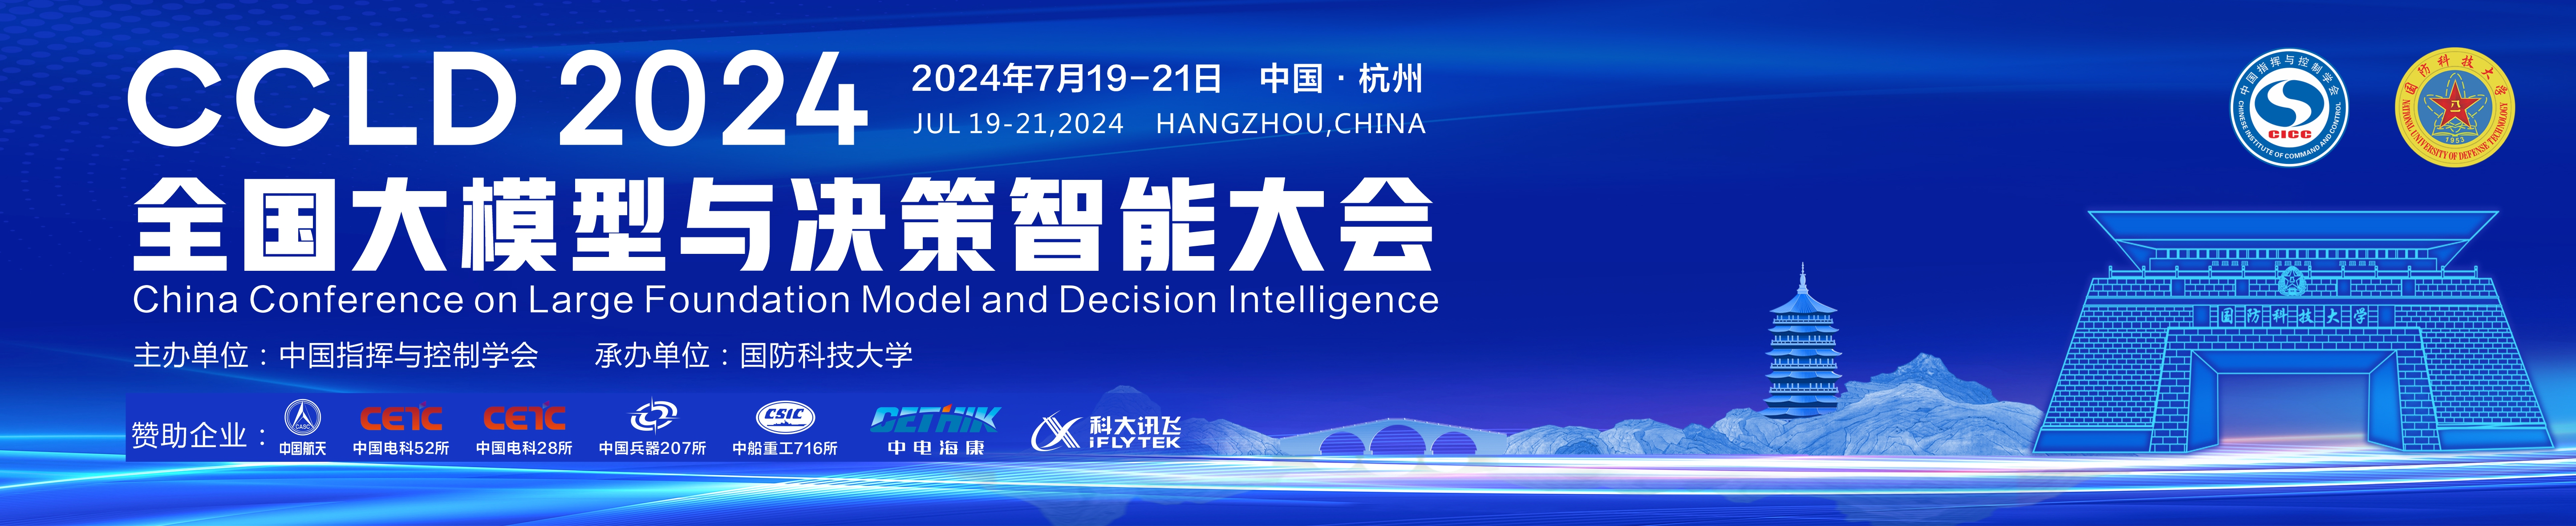 全国大模型与决策智能大会（China Conference on Large Foundation Model and Decision Intelligence，CCLD）